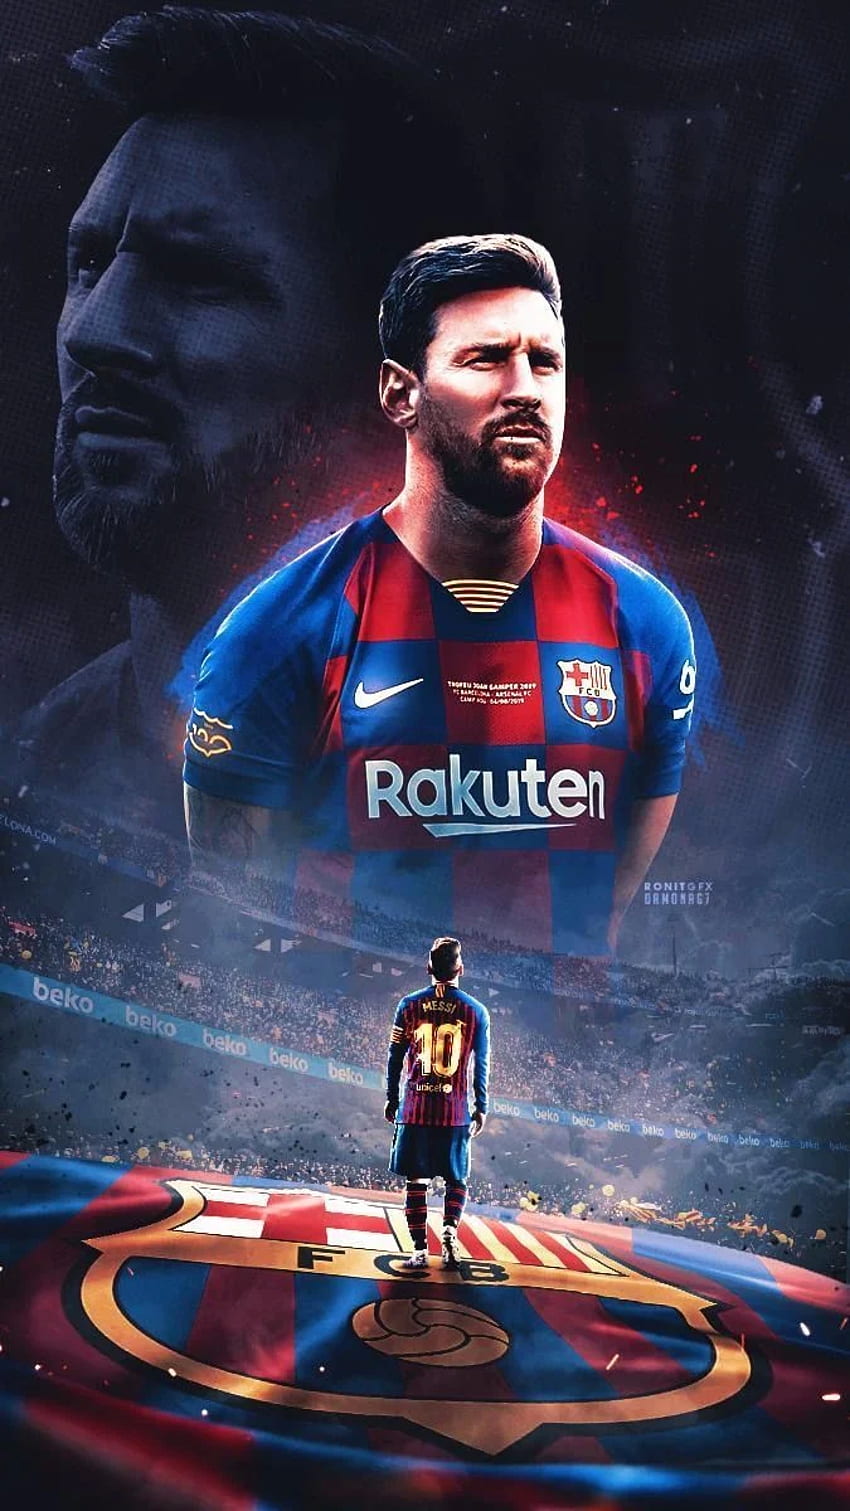 Hình nền iPhone liên quan đến bóng đá của Lionel Messi rất phù hợp với những người yêu thích thể thao. Hãy tải hình nền này để nhìn thấy chân sút thiên tài với những pha bóng ma thuật của mình.